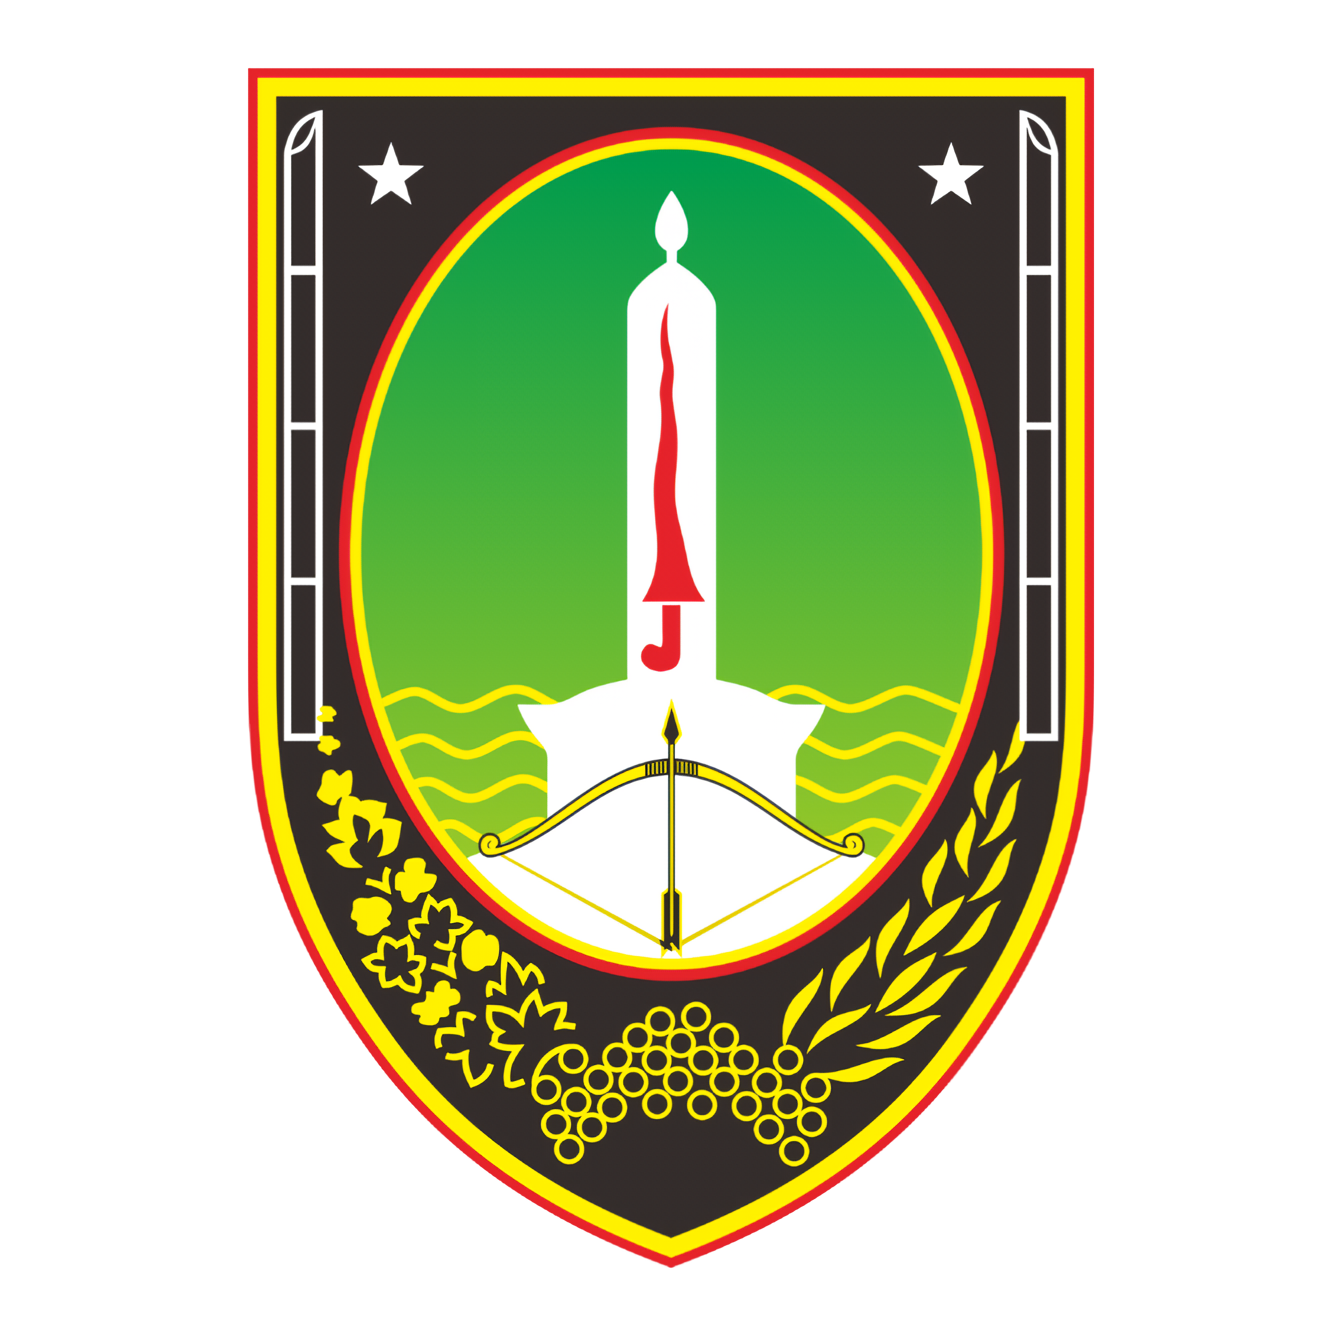 logo-pemkot-surakarta-png